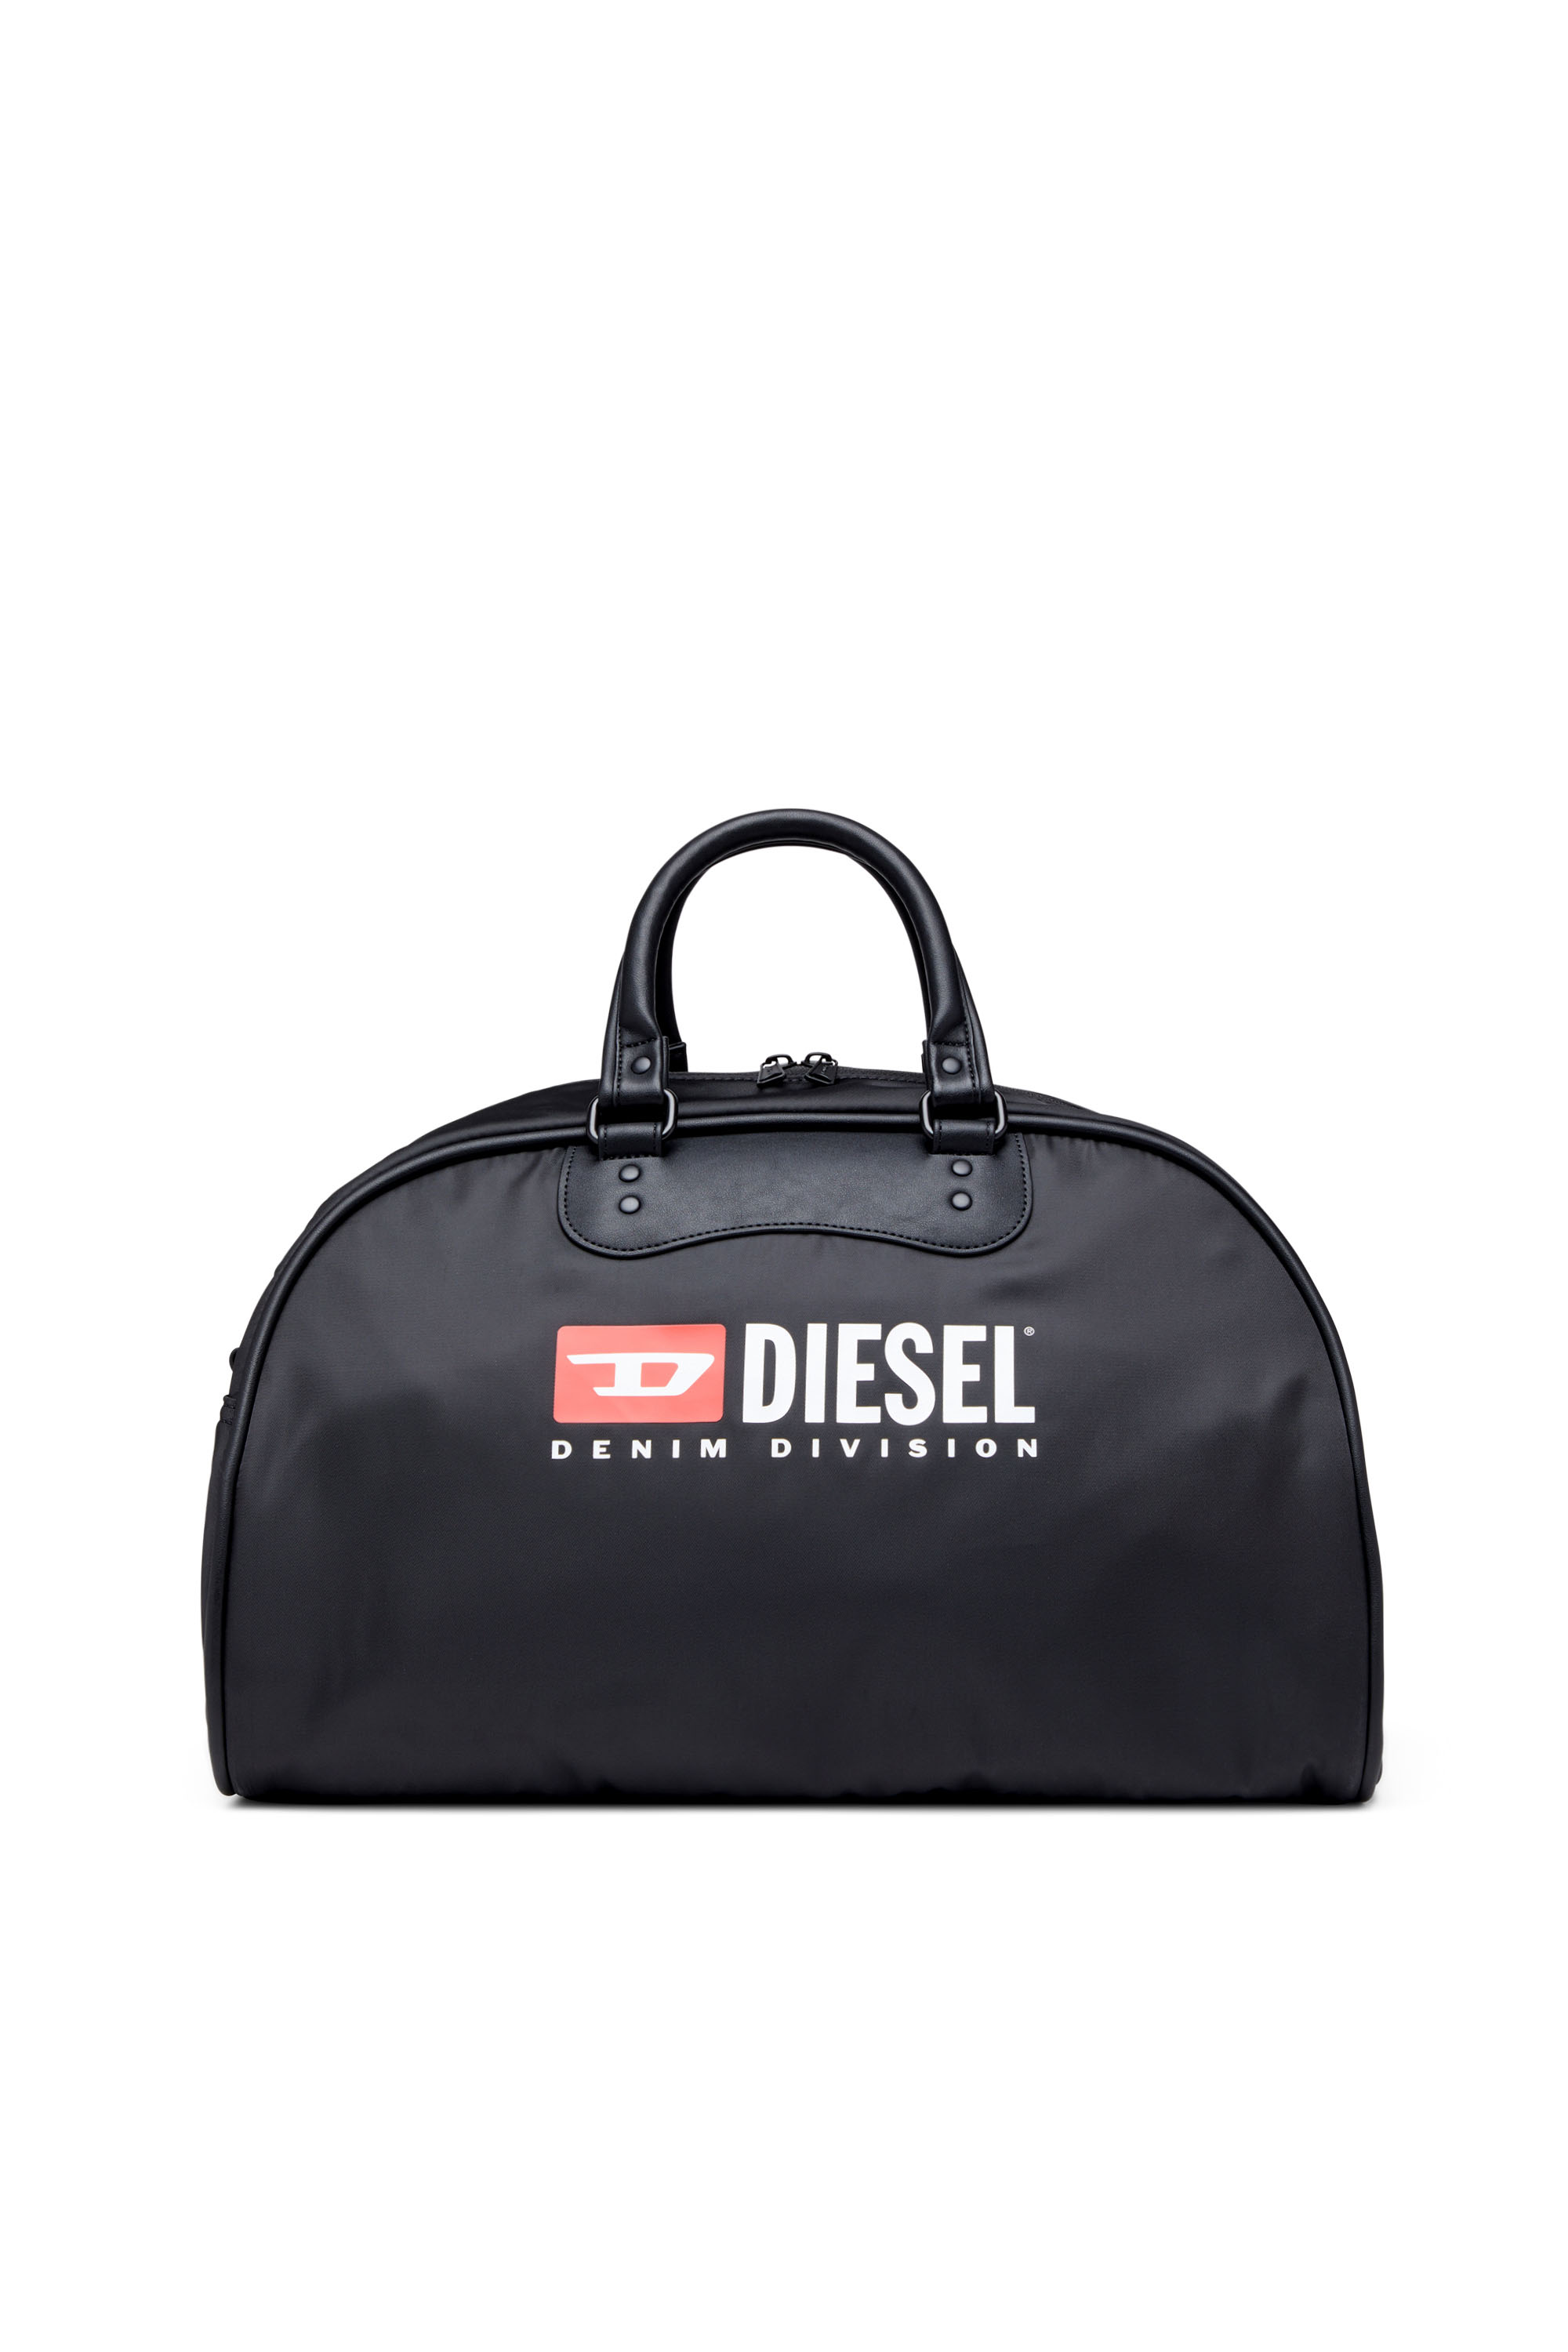 Diesel - RINKE DUFFLE, Nero - Image 1